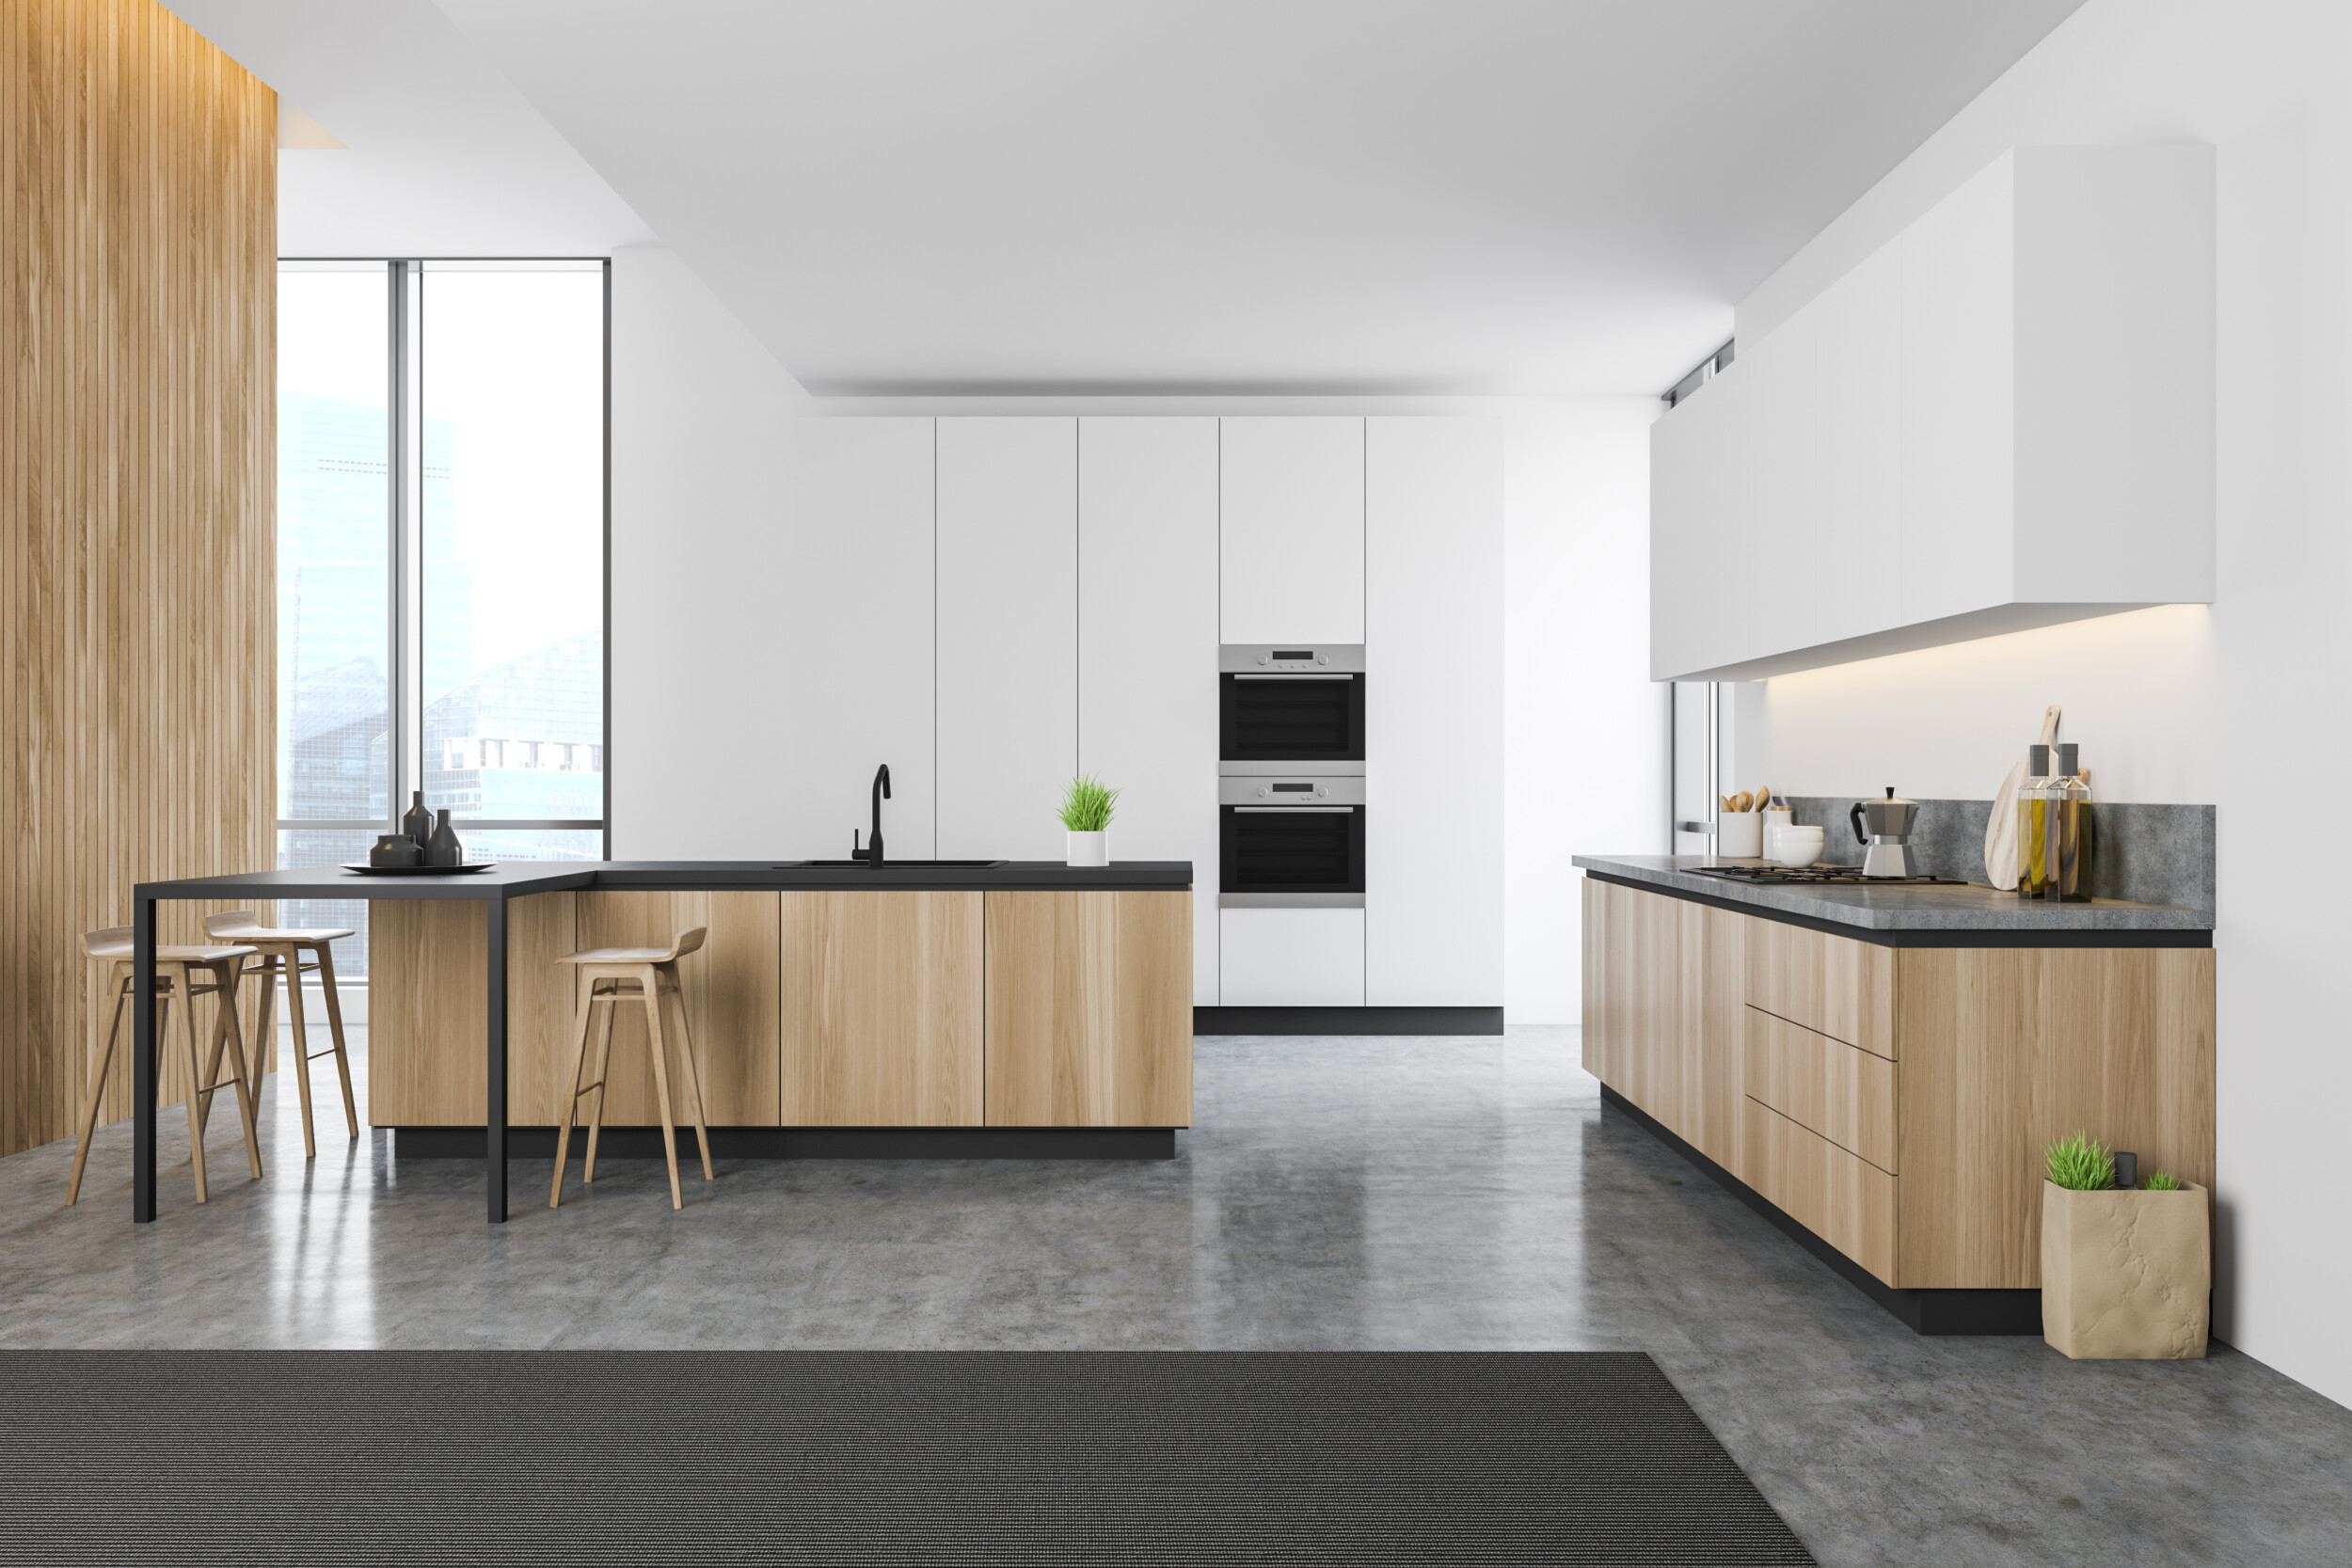 Kitchen Flooring Ideas The Top 12, Grey Tile Kitchen Floor